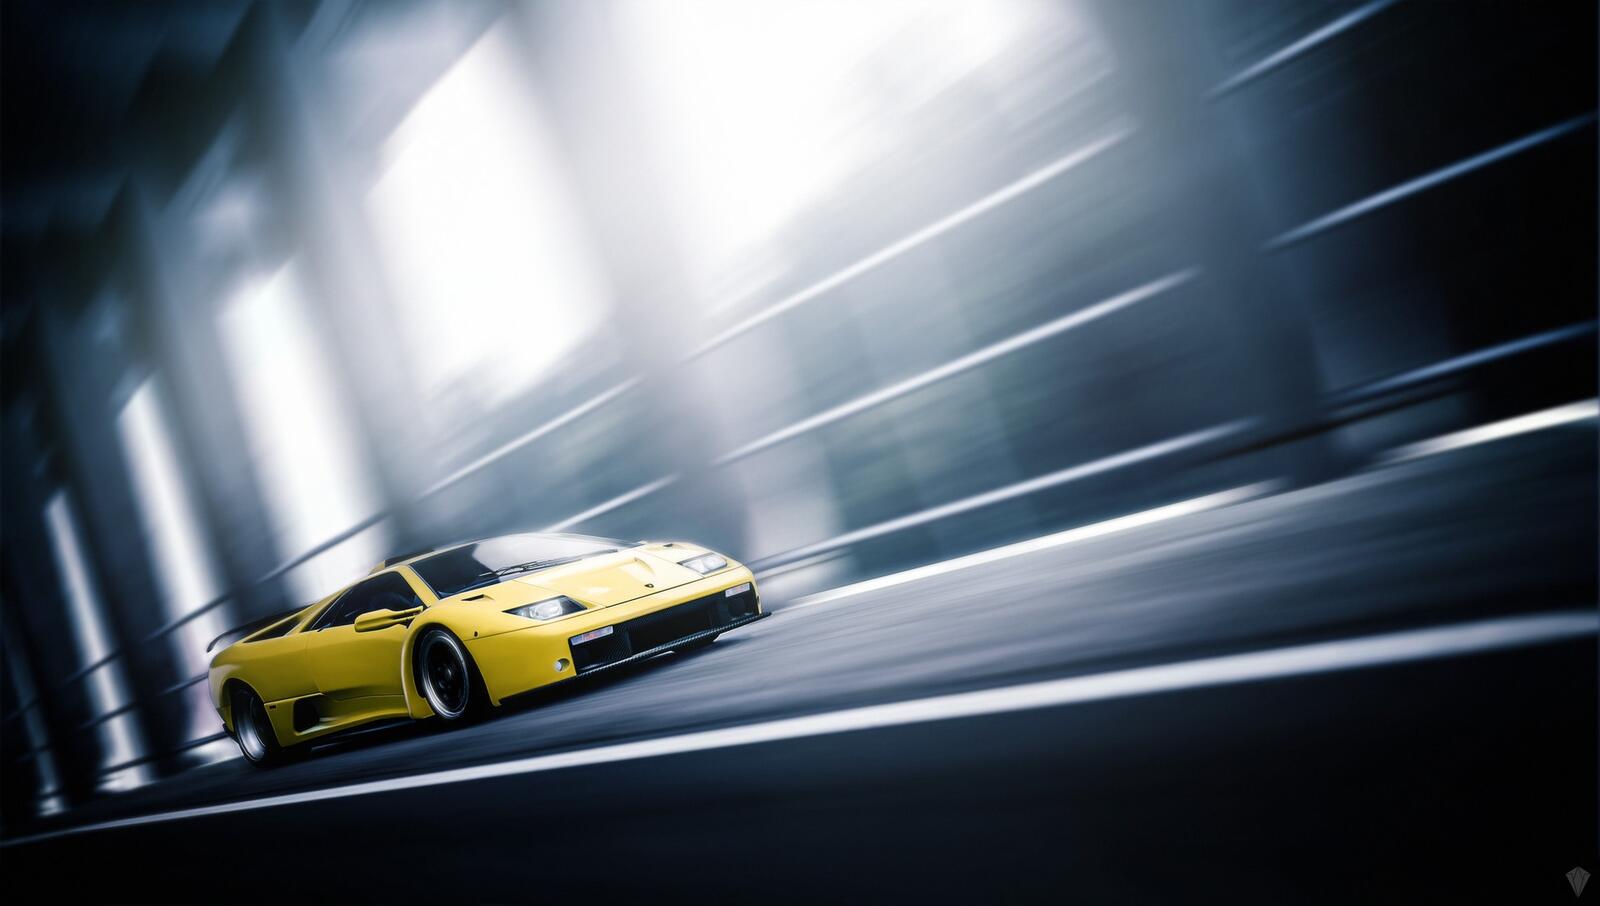 Бесплатное фото Lamborghini diablo желтого цвета